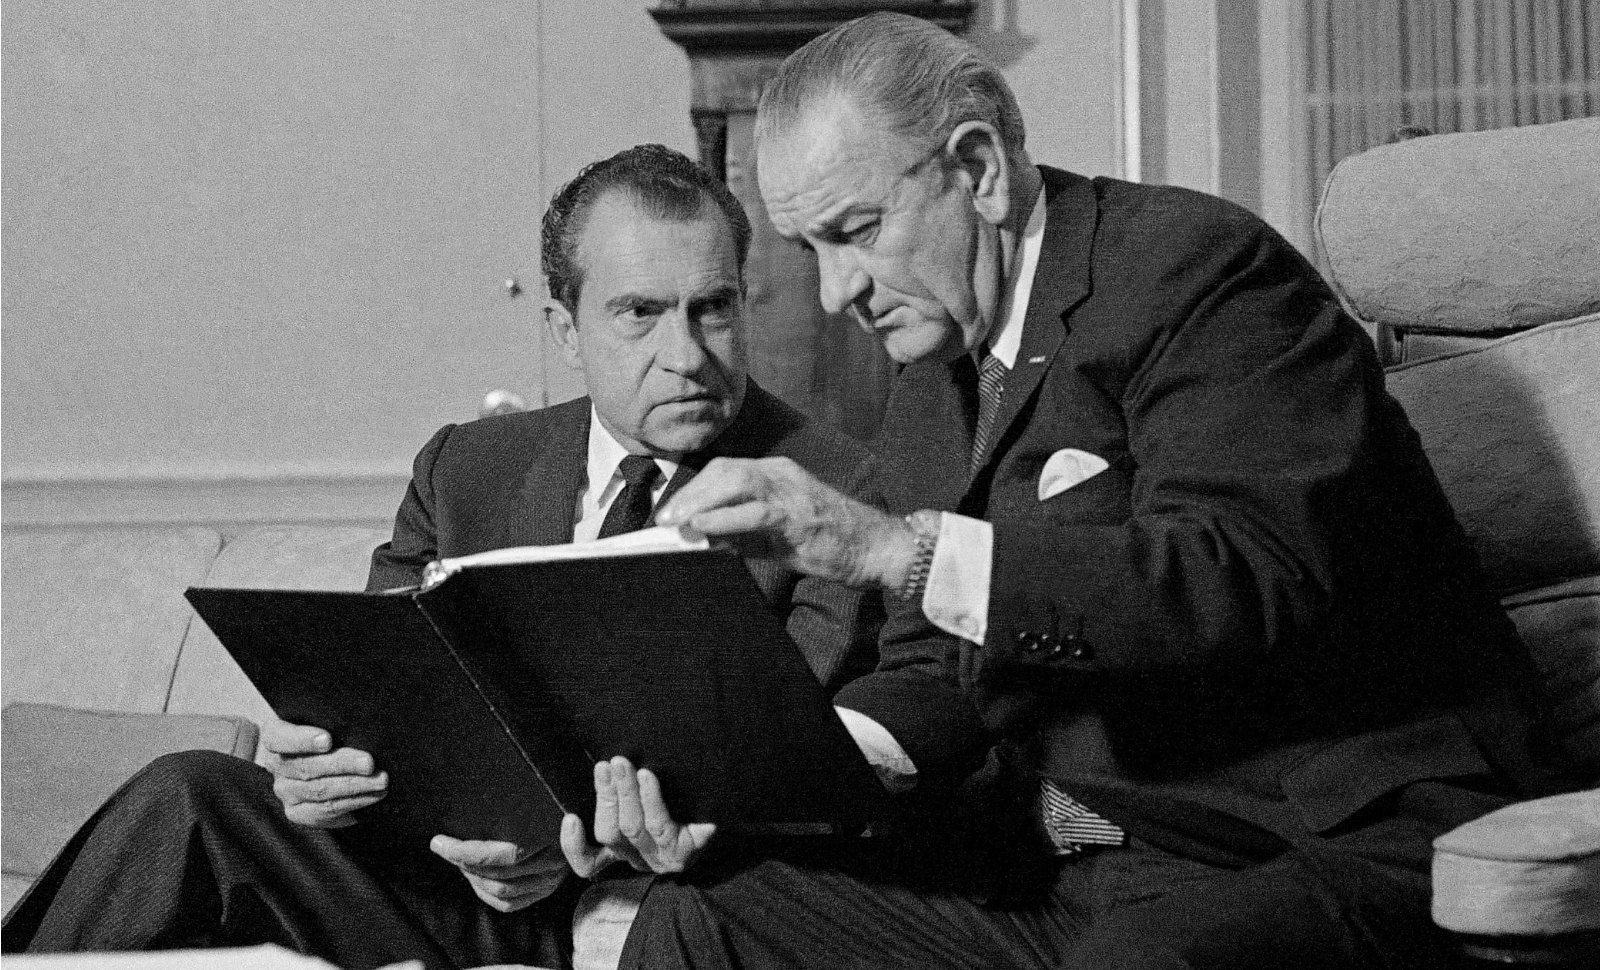 Nixon a prolongé la guerre du Vietnam pour se faire élire